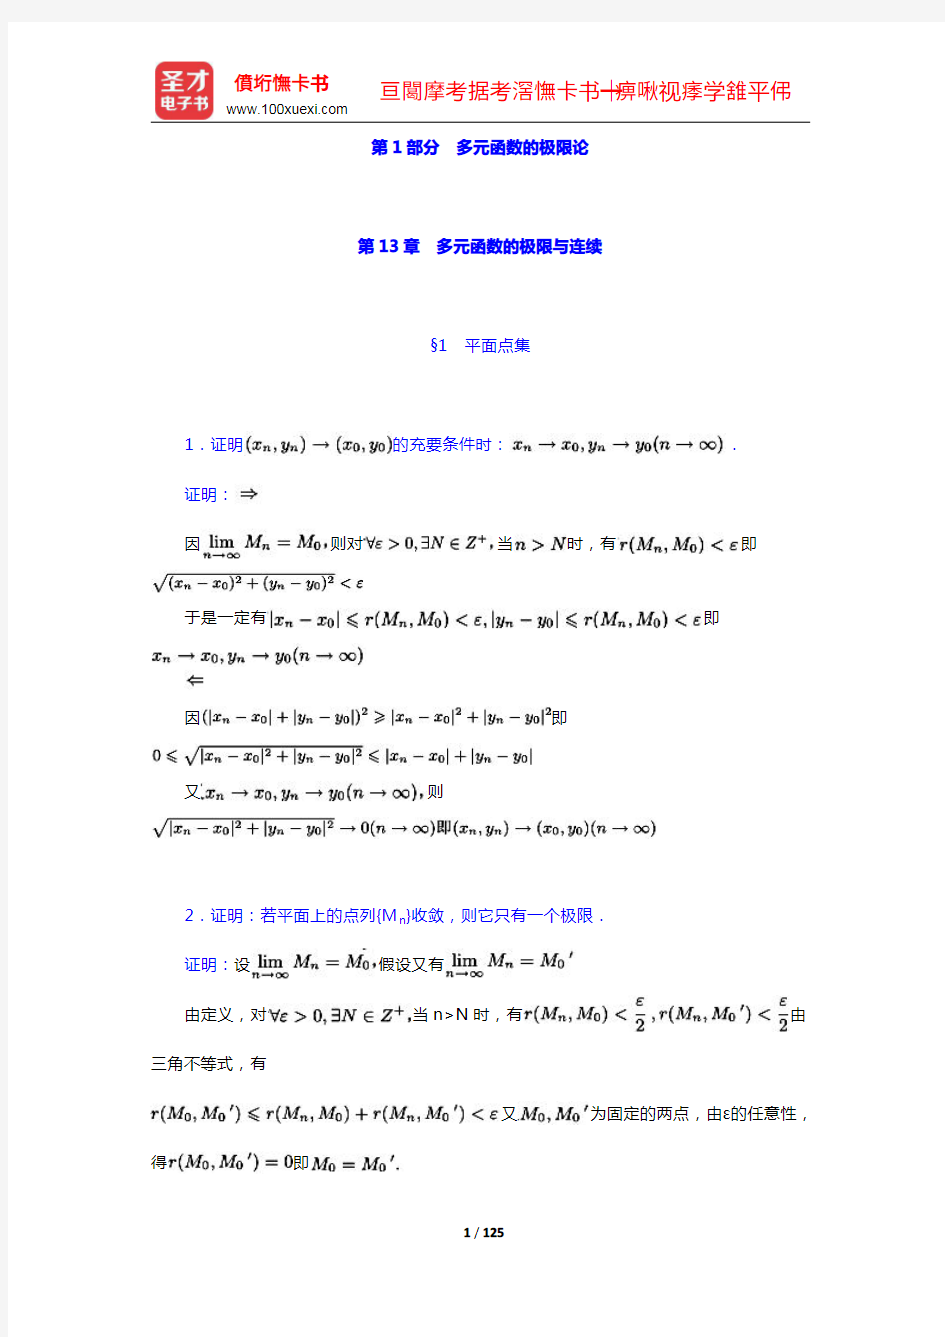 复旦大学数学系《数学分析》(第3版)(下册)配套题库(13-22章)【圣才出品】